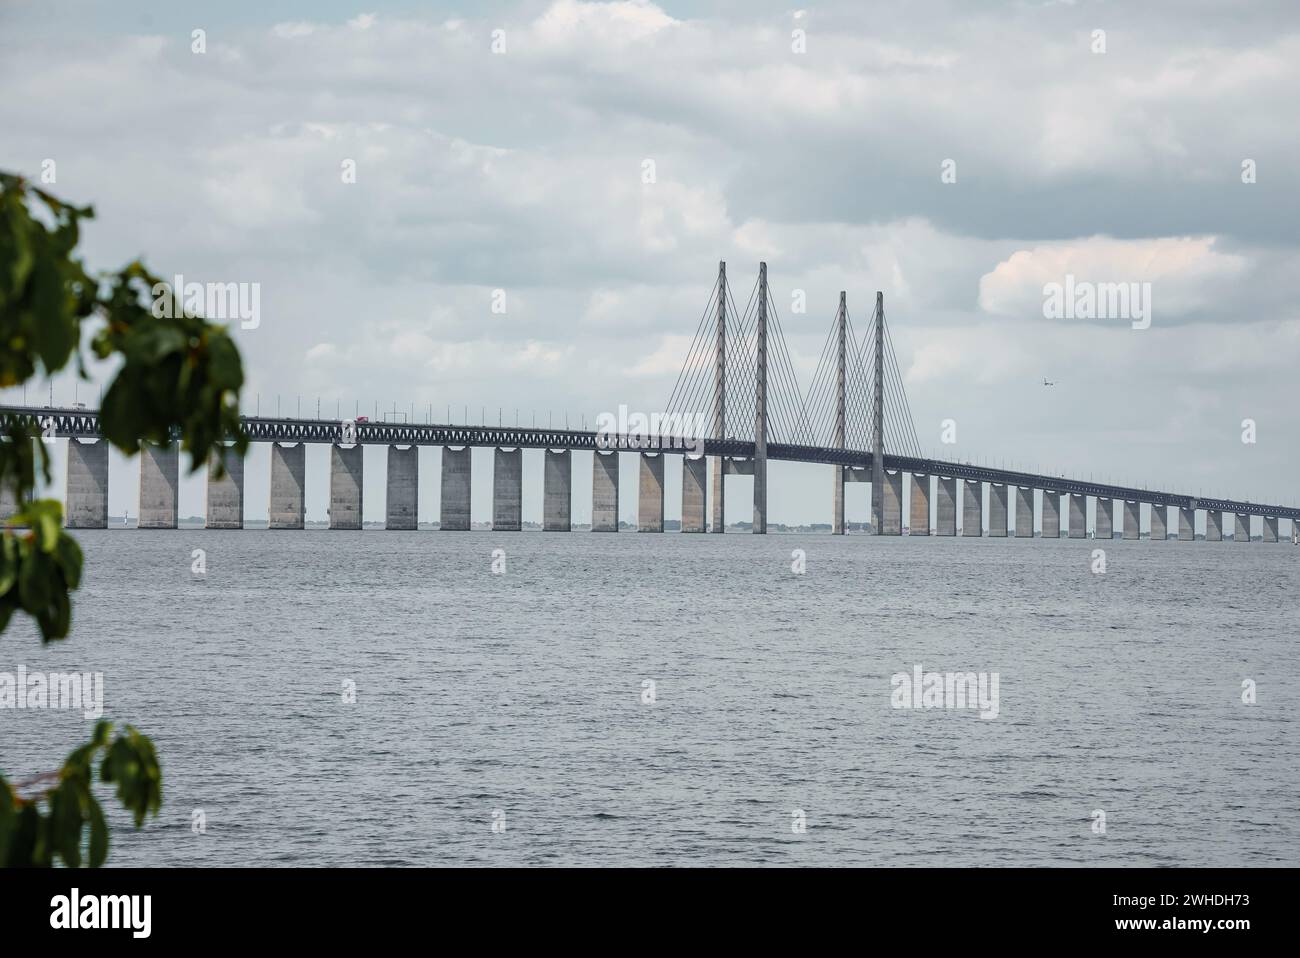 Le pont d'Oresund relie Malmo à Copenhague, le ciel est couvert aujourd'hui Banque D'Images